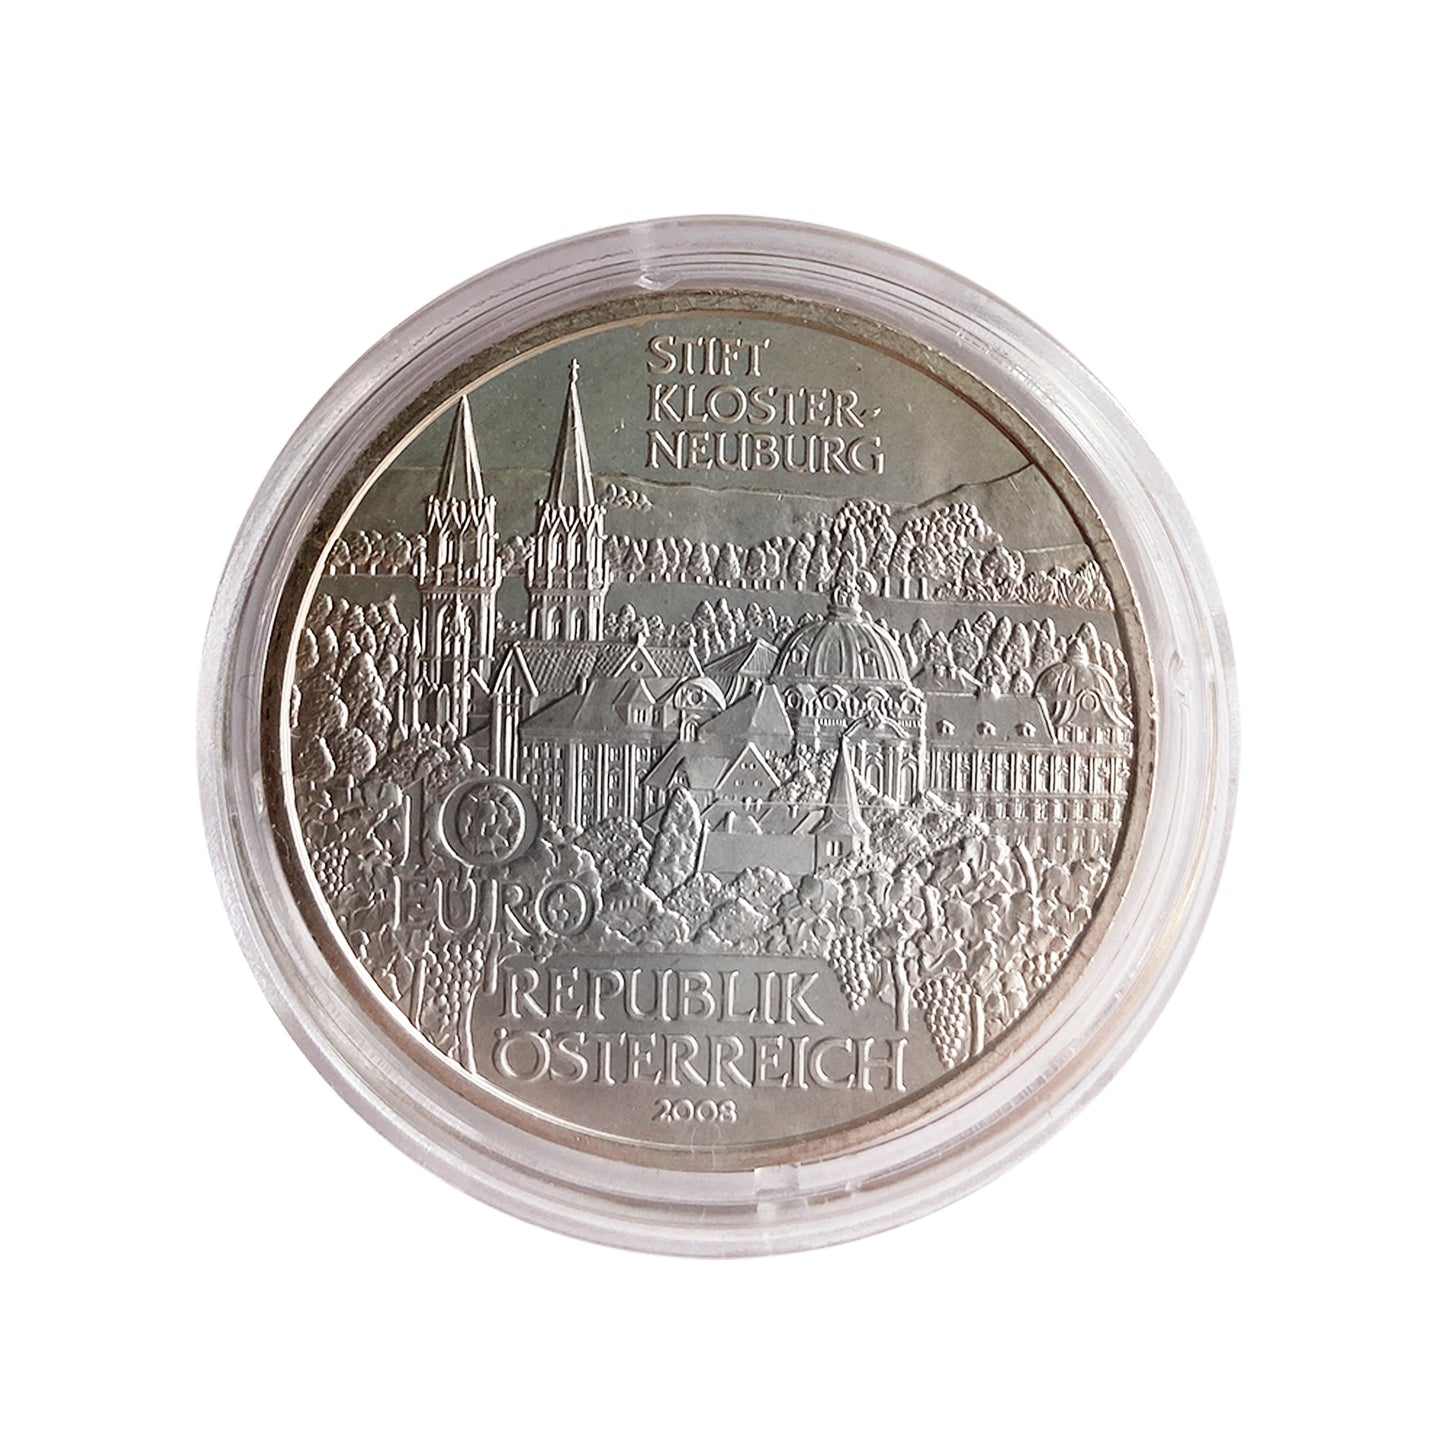 Austria - Moneda 10 euros plata 2008 - Monasterio de Klosterneuburg